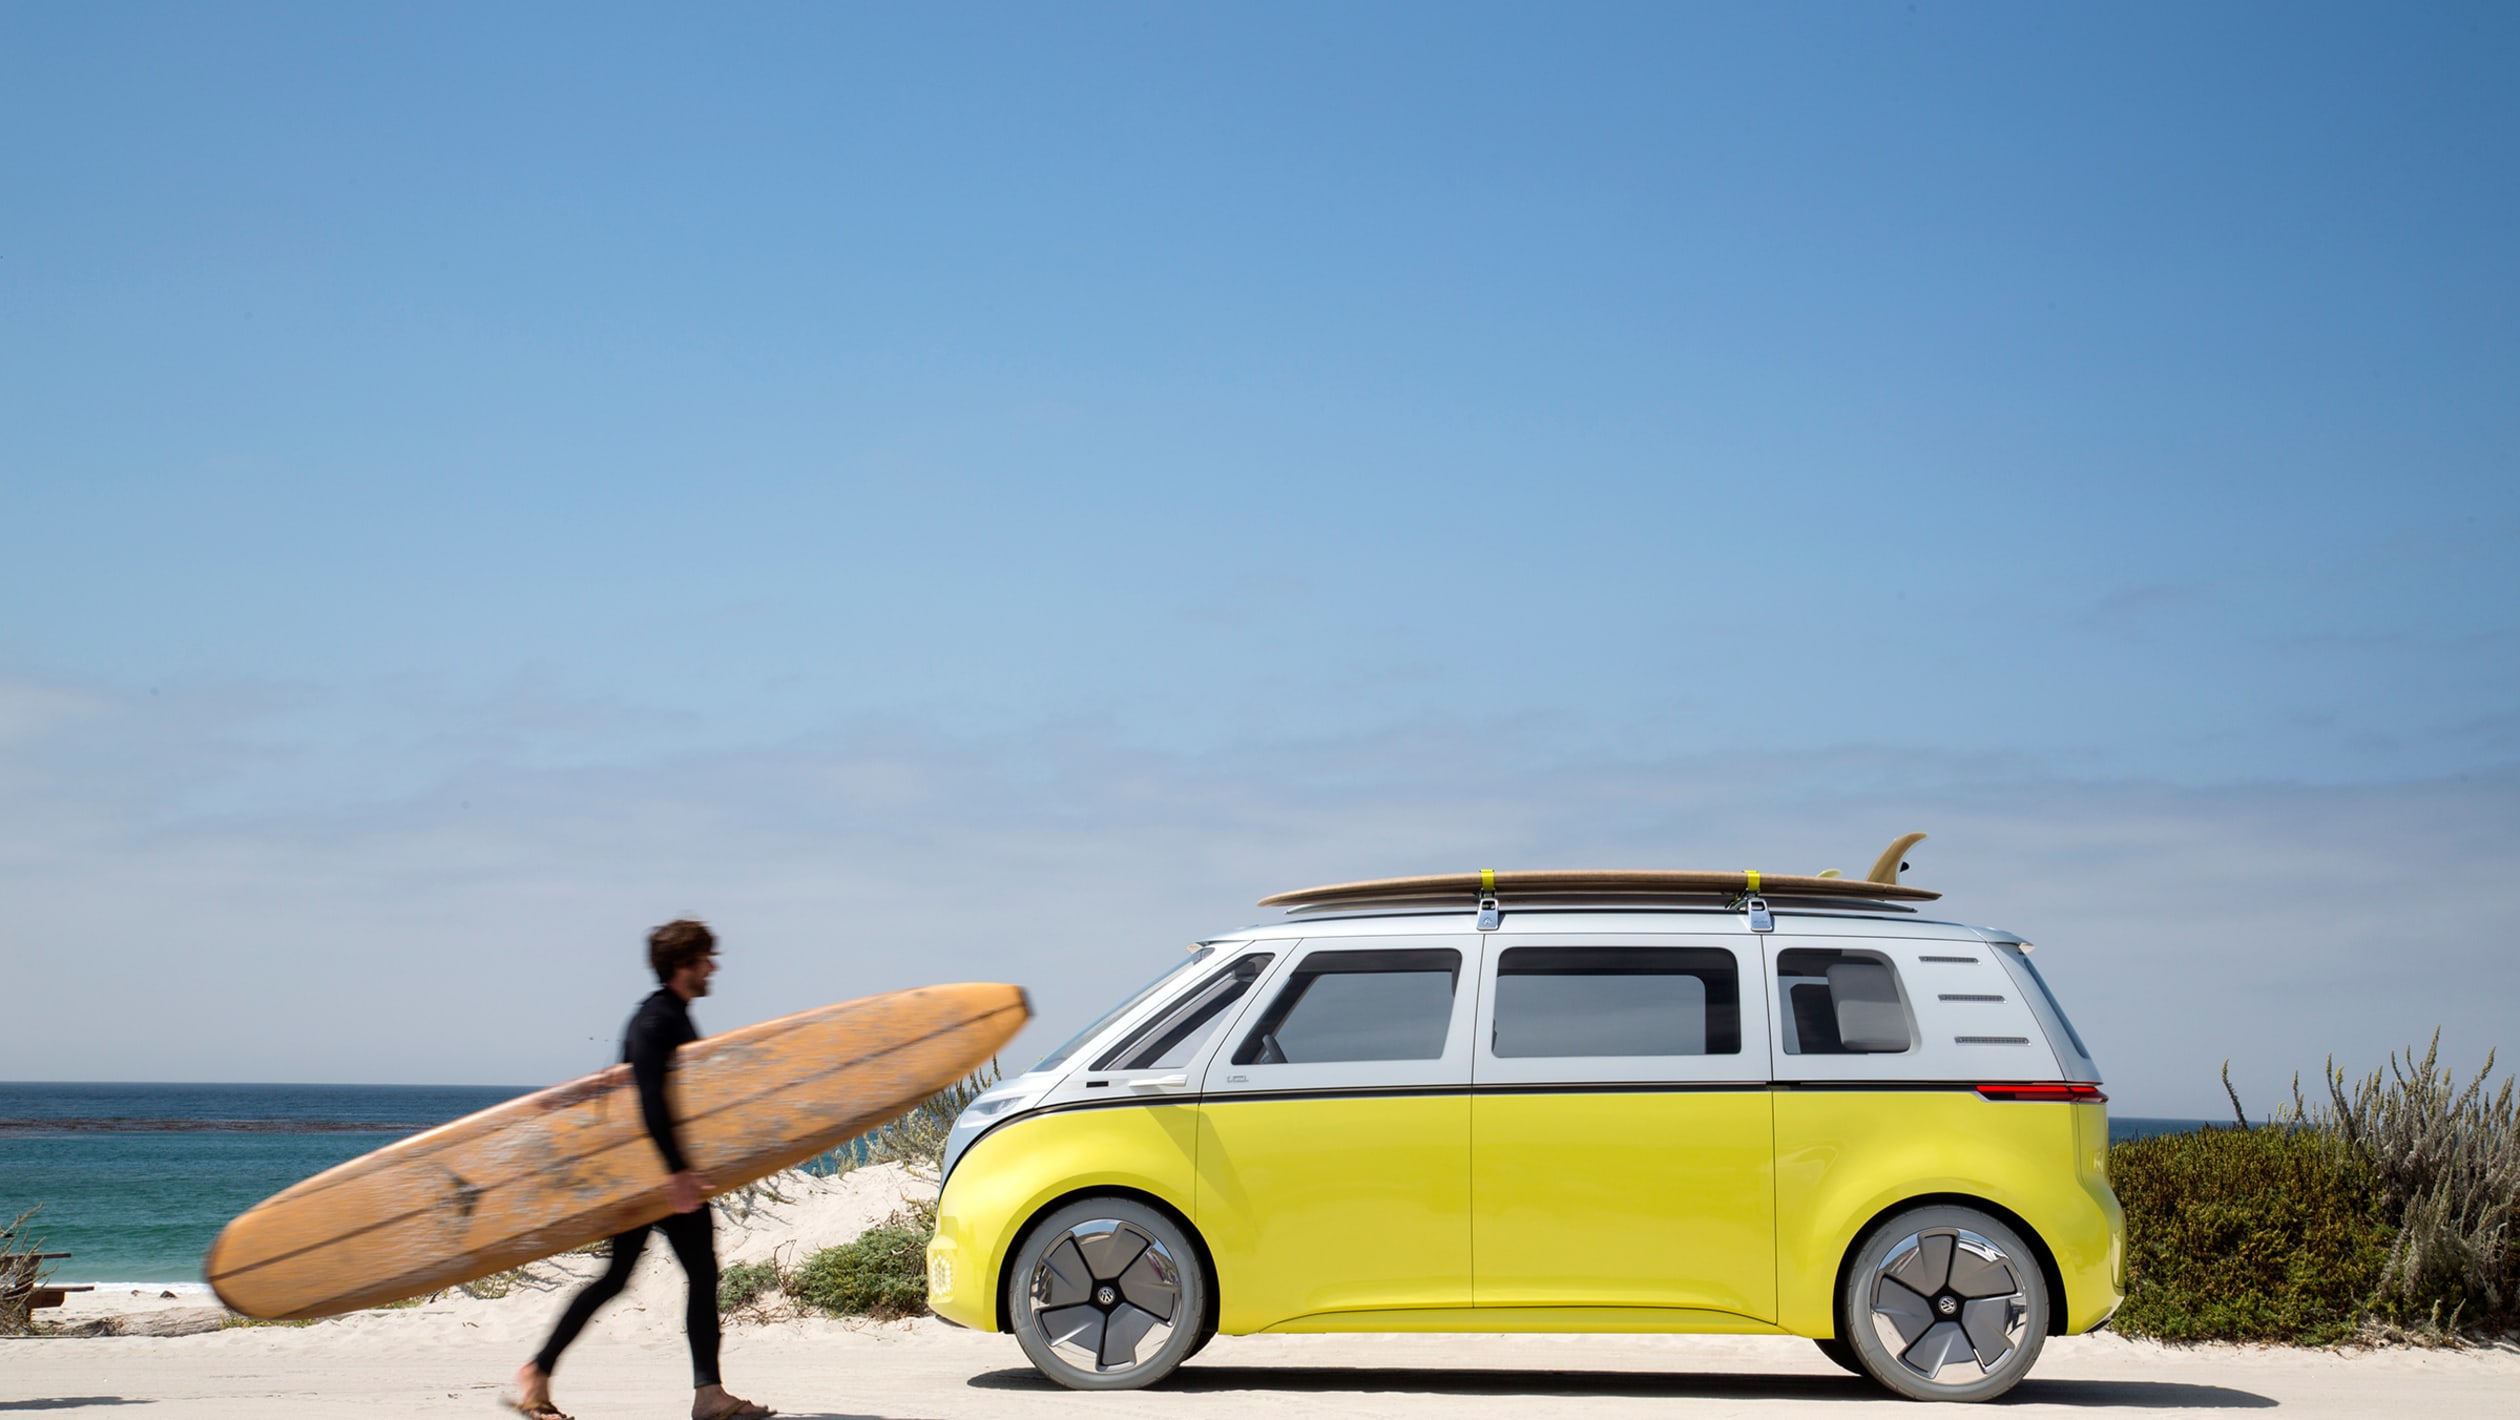 Volkswagen I.D. Buzz Microbus Concept 2 - Volkswagen ID. California Campervan Photos Gallery